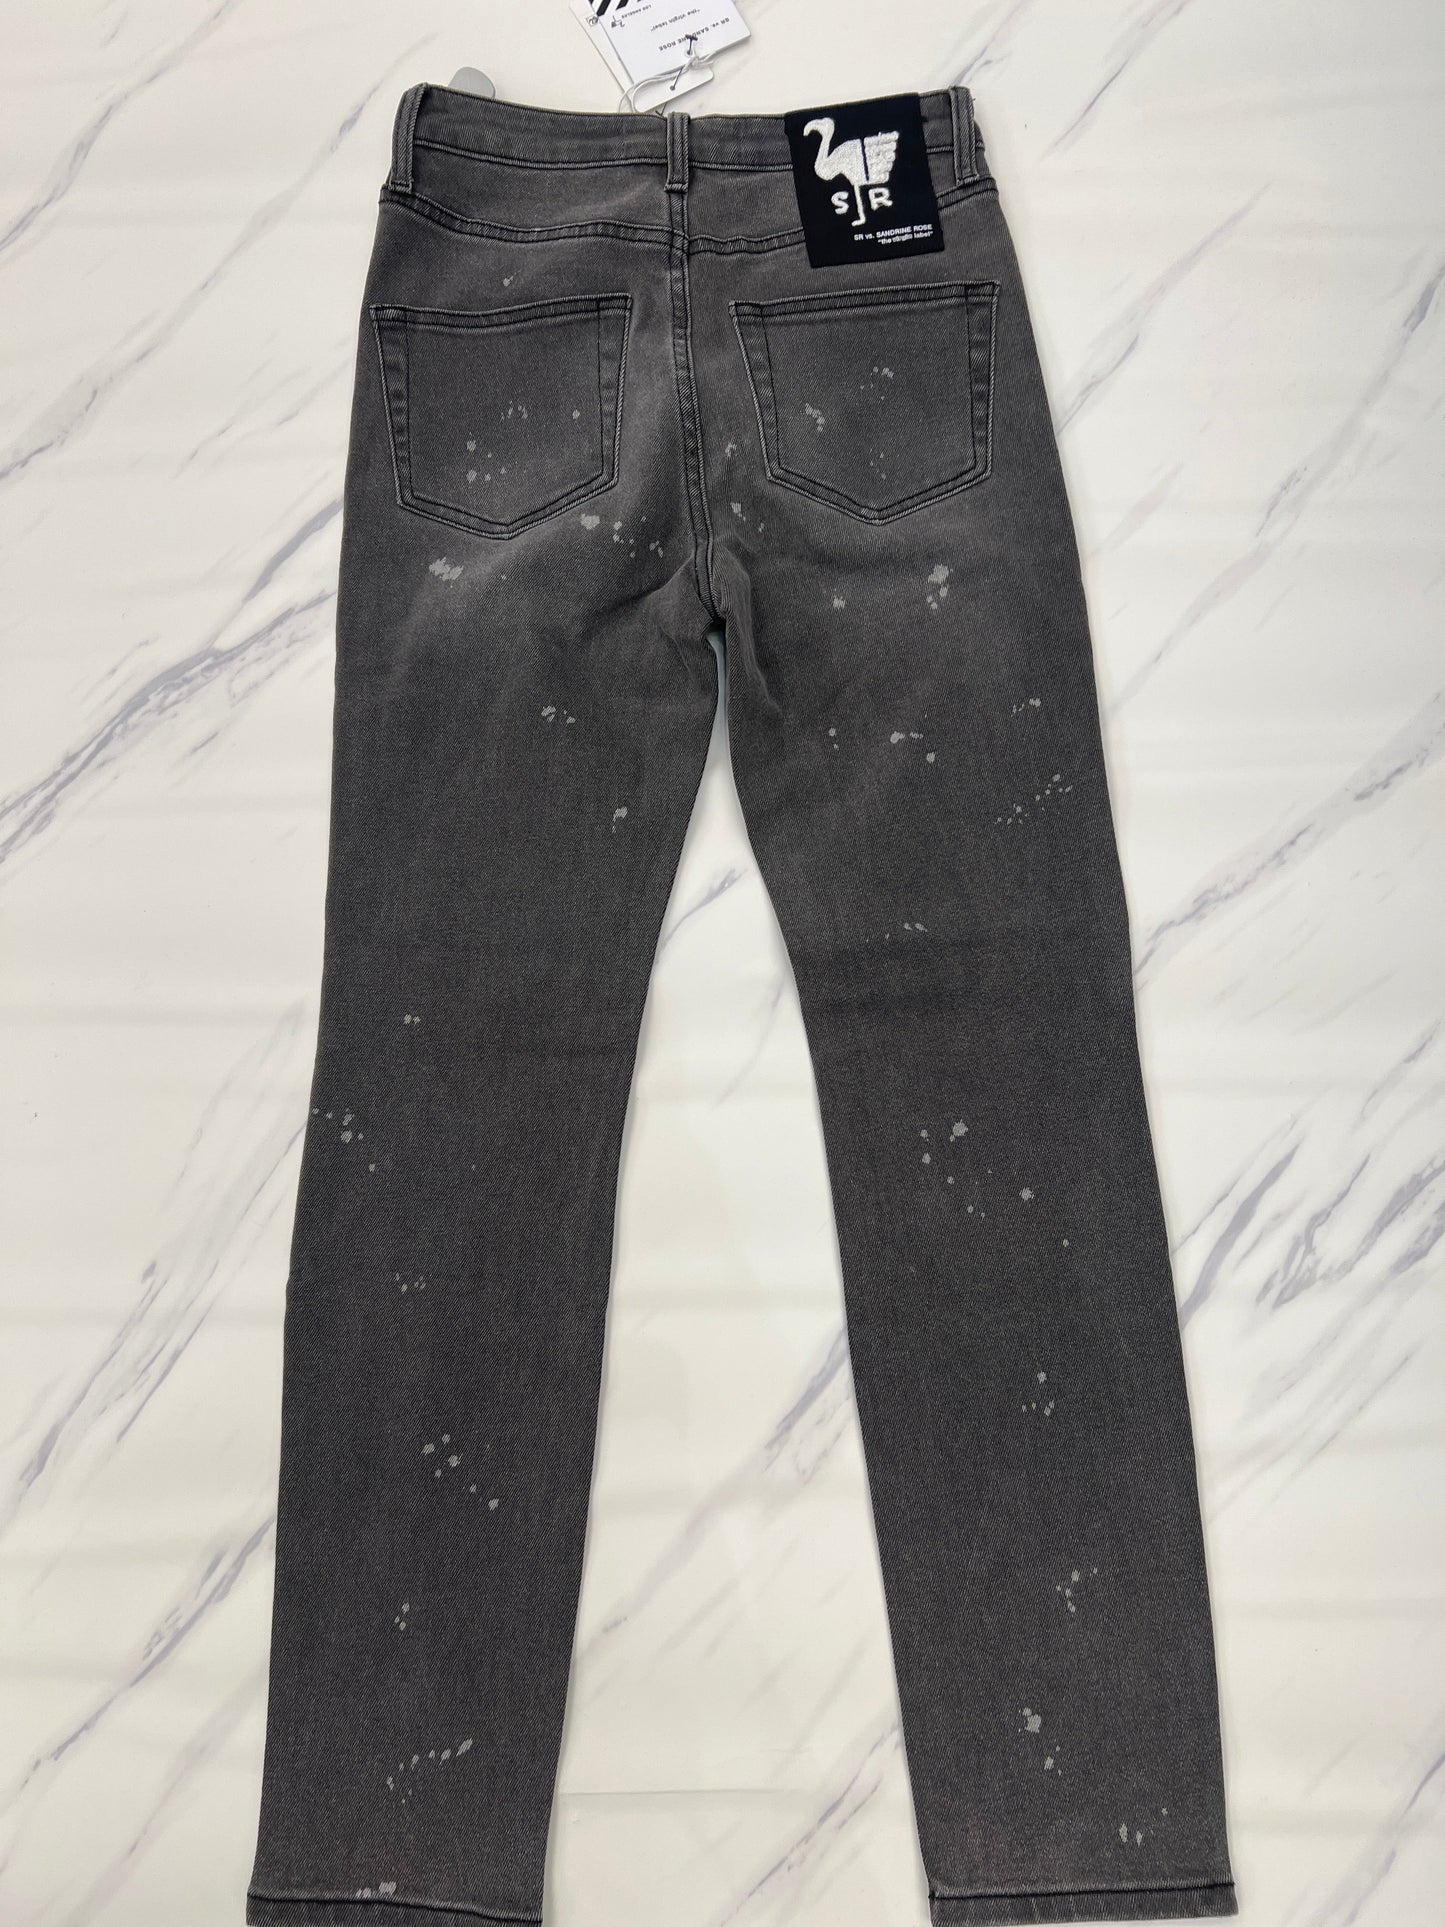 Jeans Designer Cmb, Size 0